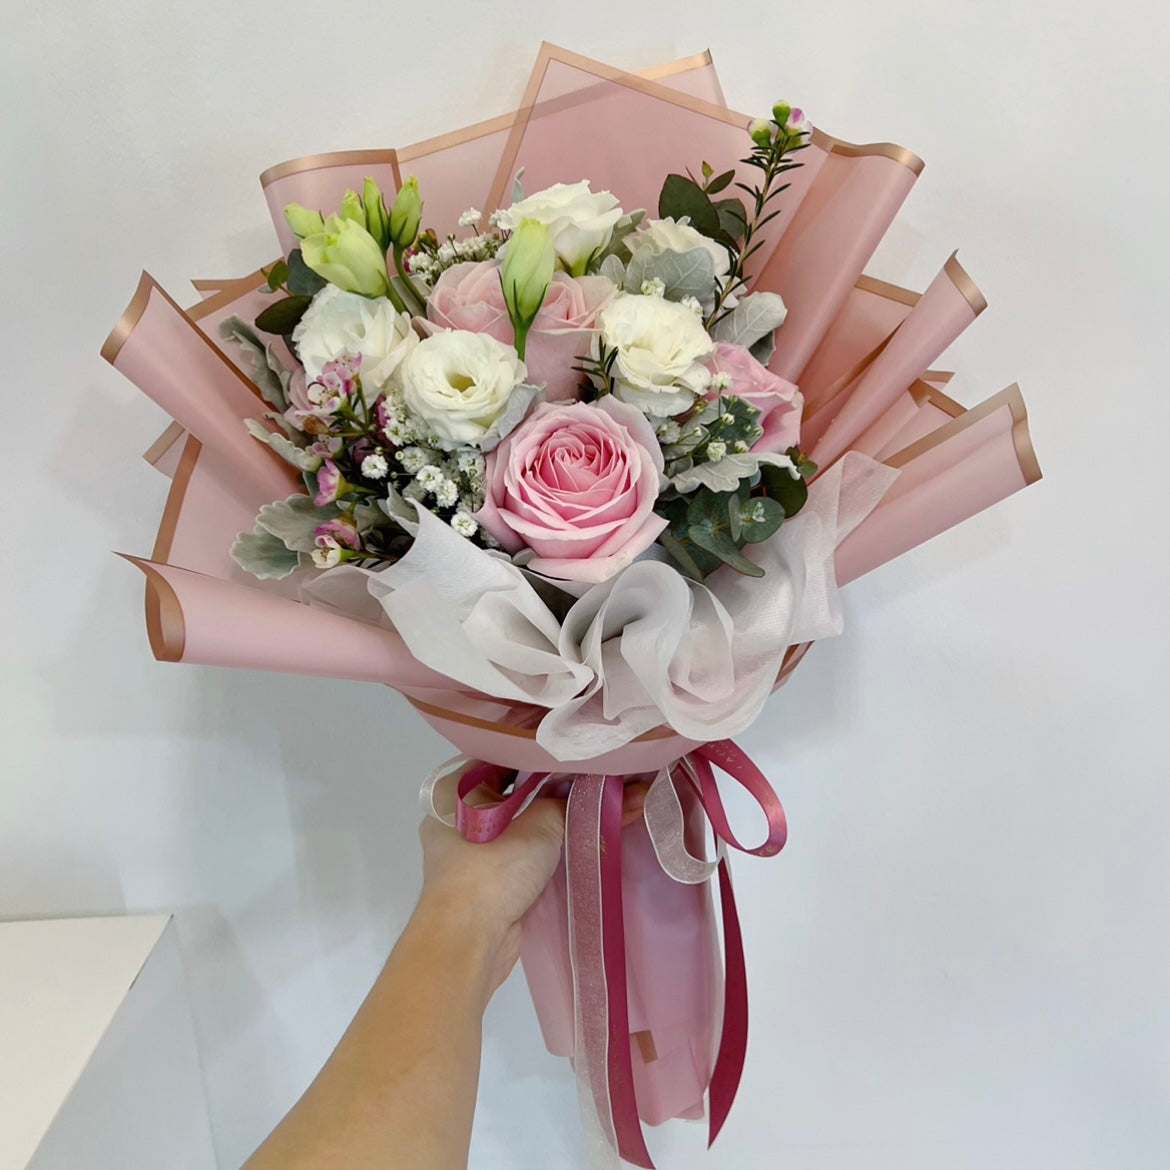 Fresh Pink Rose Bouquet - 3 Stalks